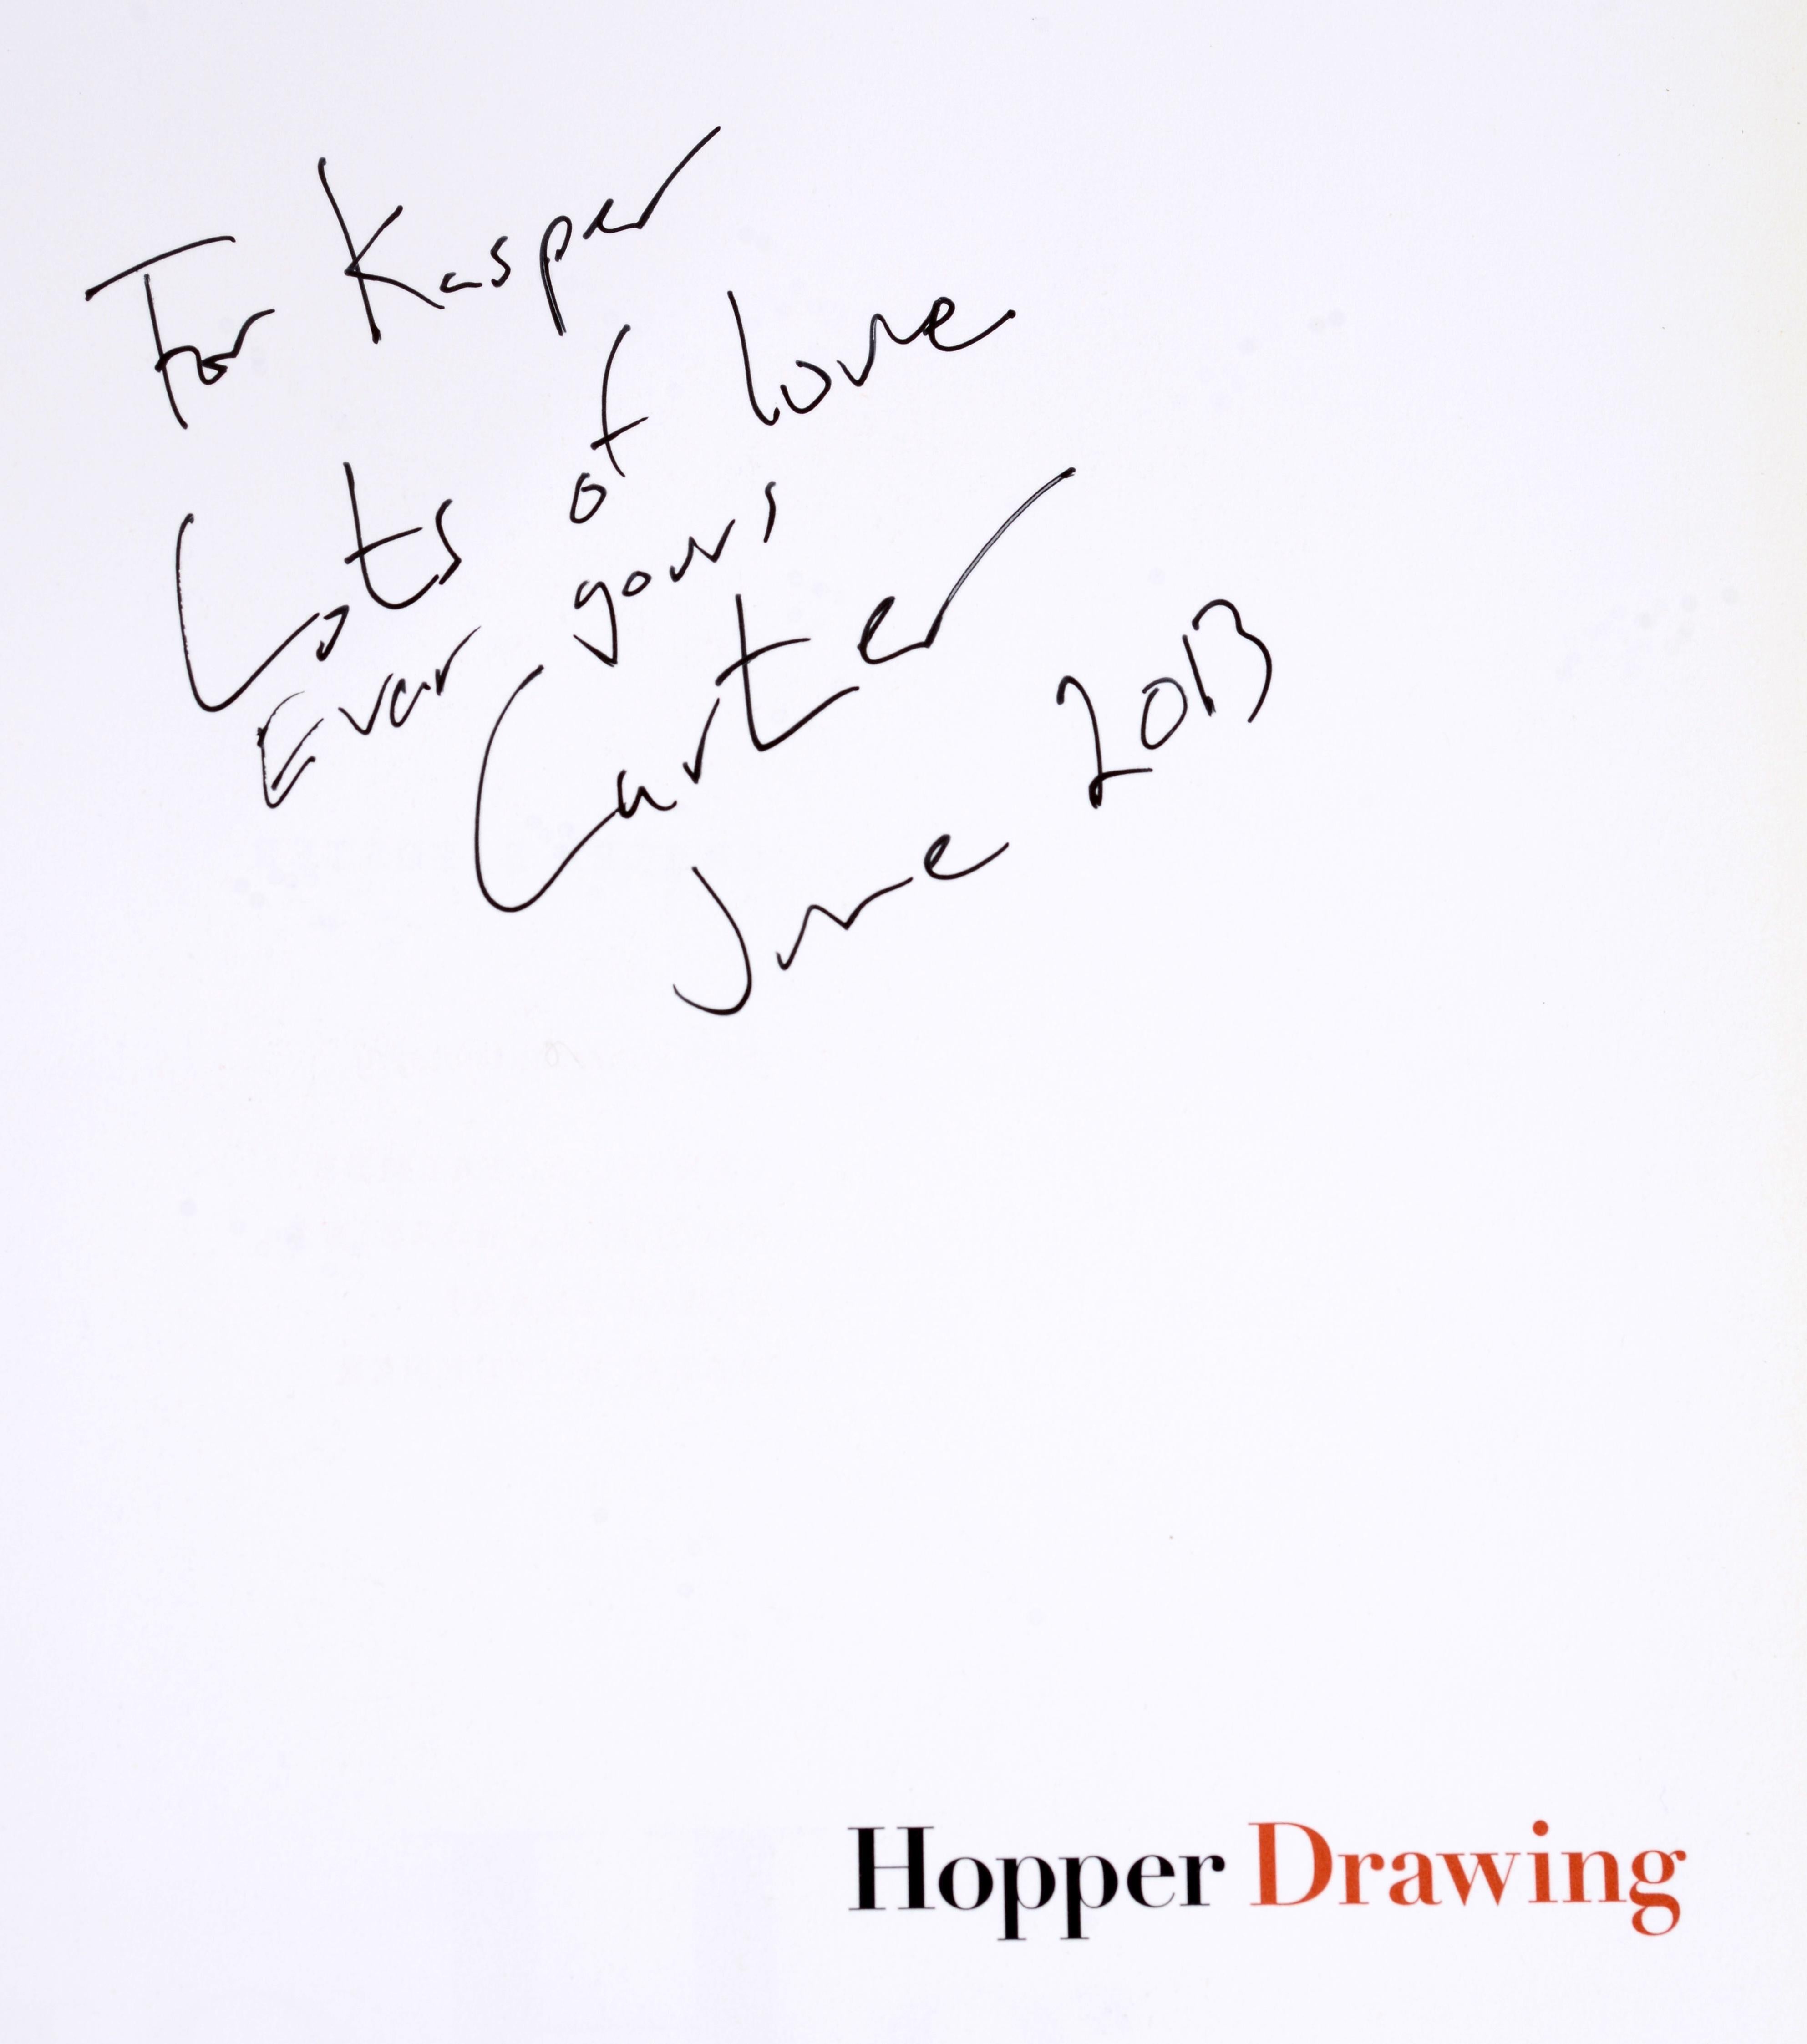 Hopper-Zeichnung von Carter E. Foster. 2013, Whitney Museum of American Art. 1st Ed Hardcover mit Schutzumschlag. Diese Monografie wurde anlässlich der Ausstellung im Whitney Museum of American Art (23. Mai bis 6. Oktober 2013) erstellt. Die